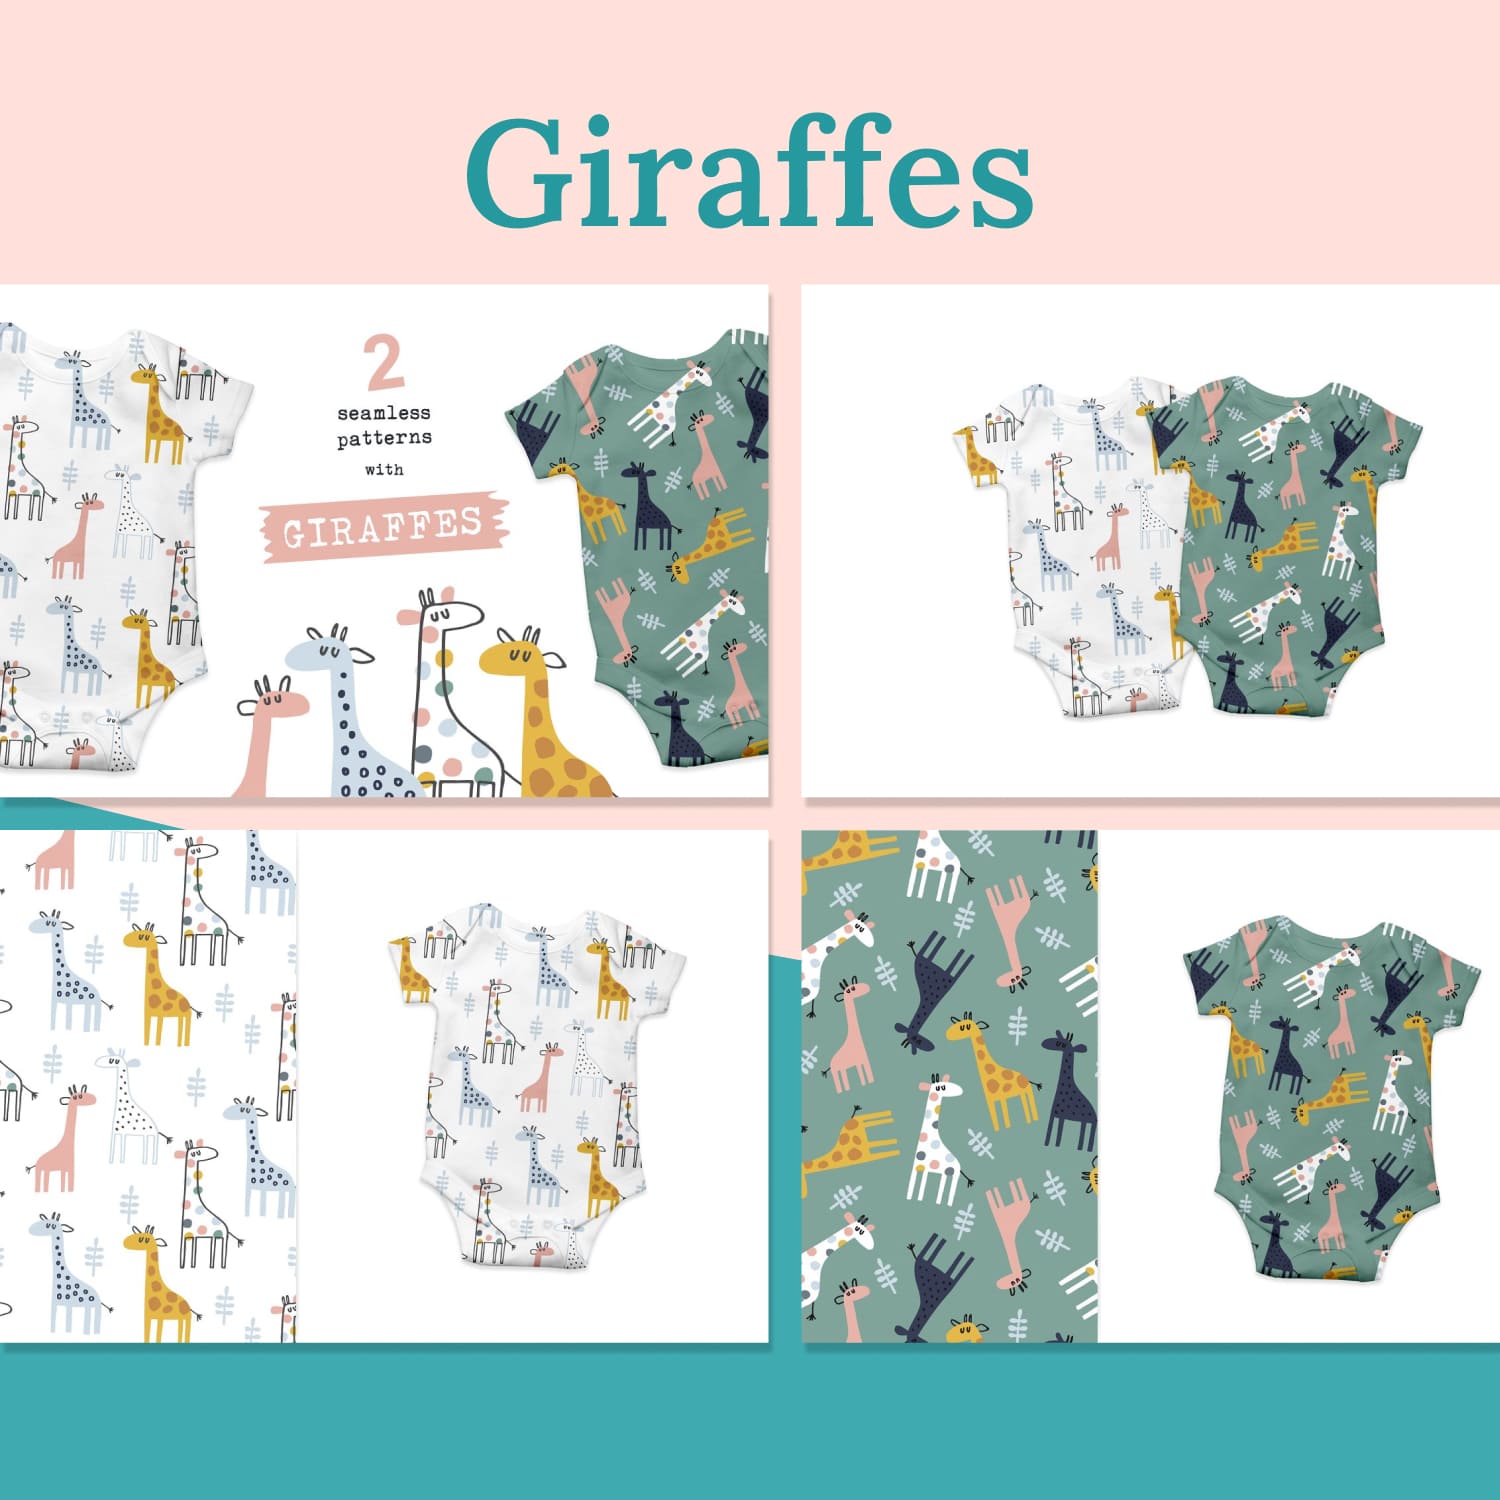 Giraffes 01.